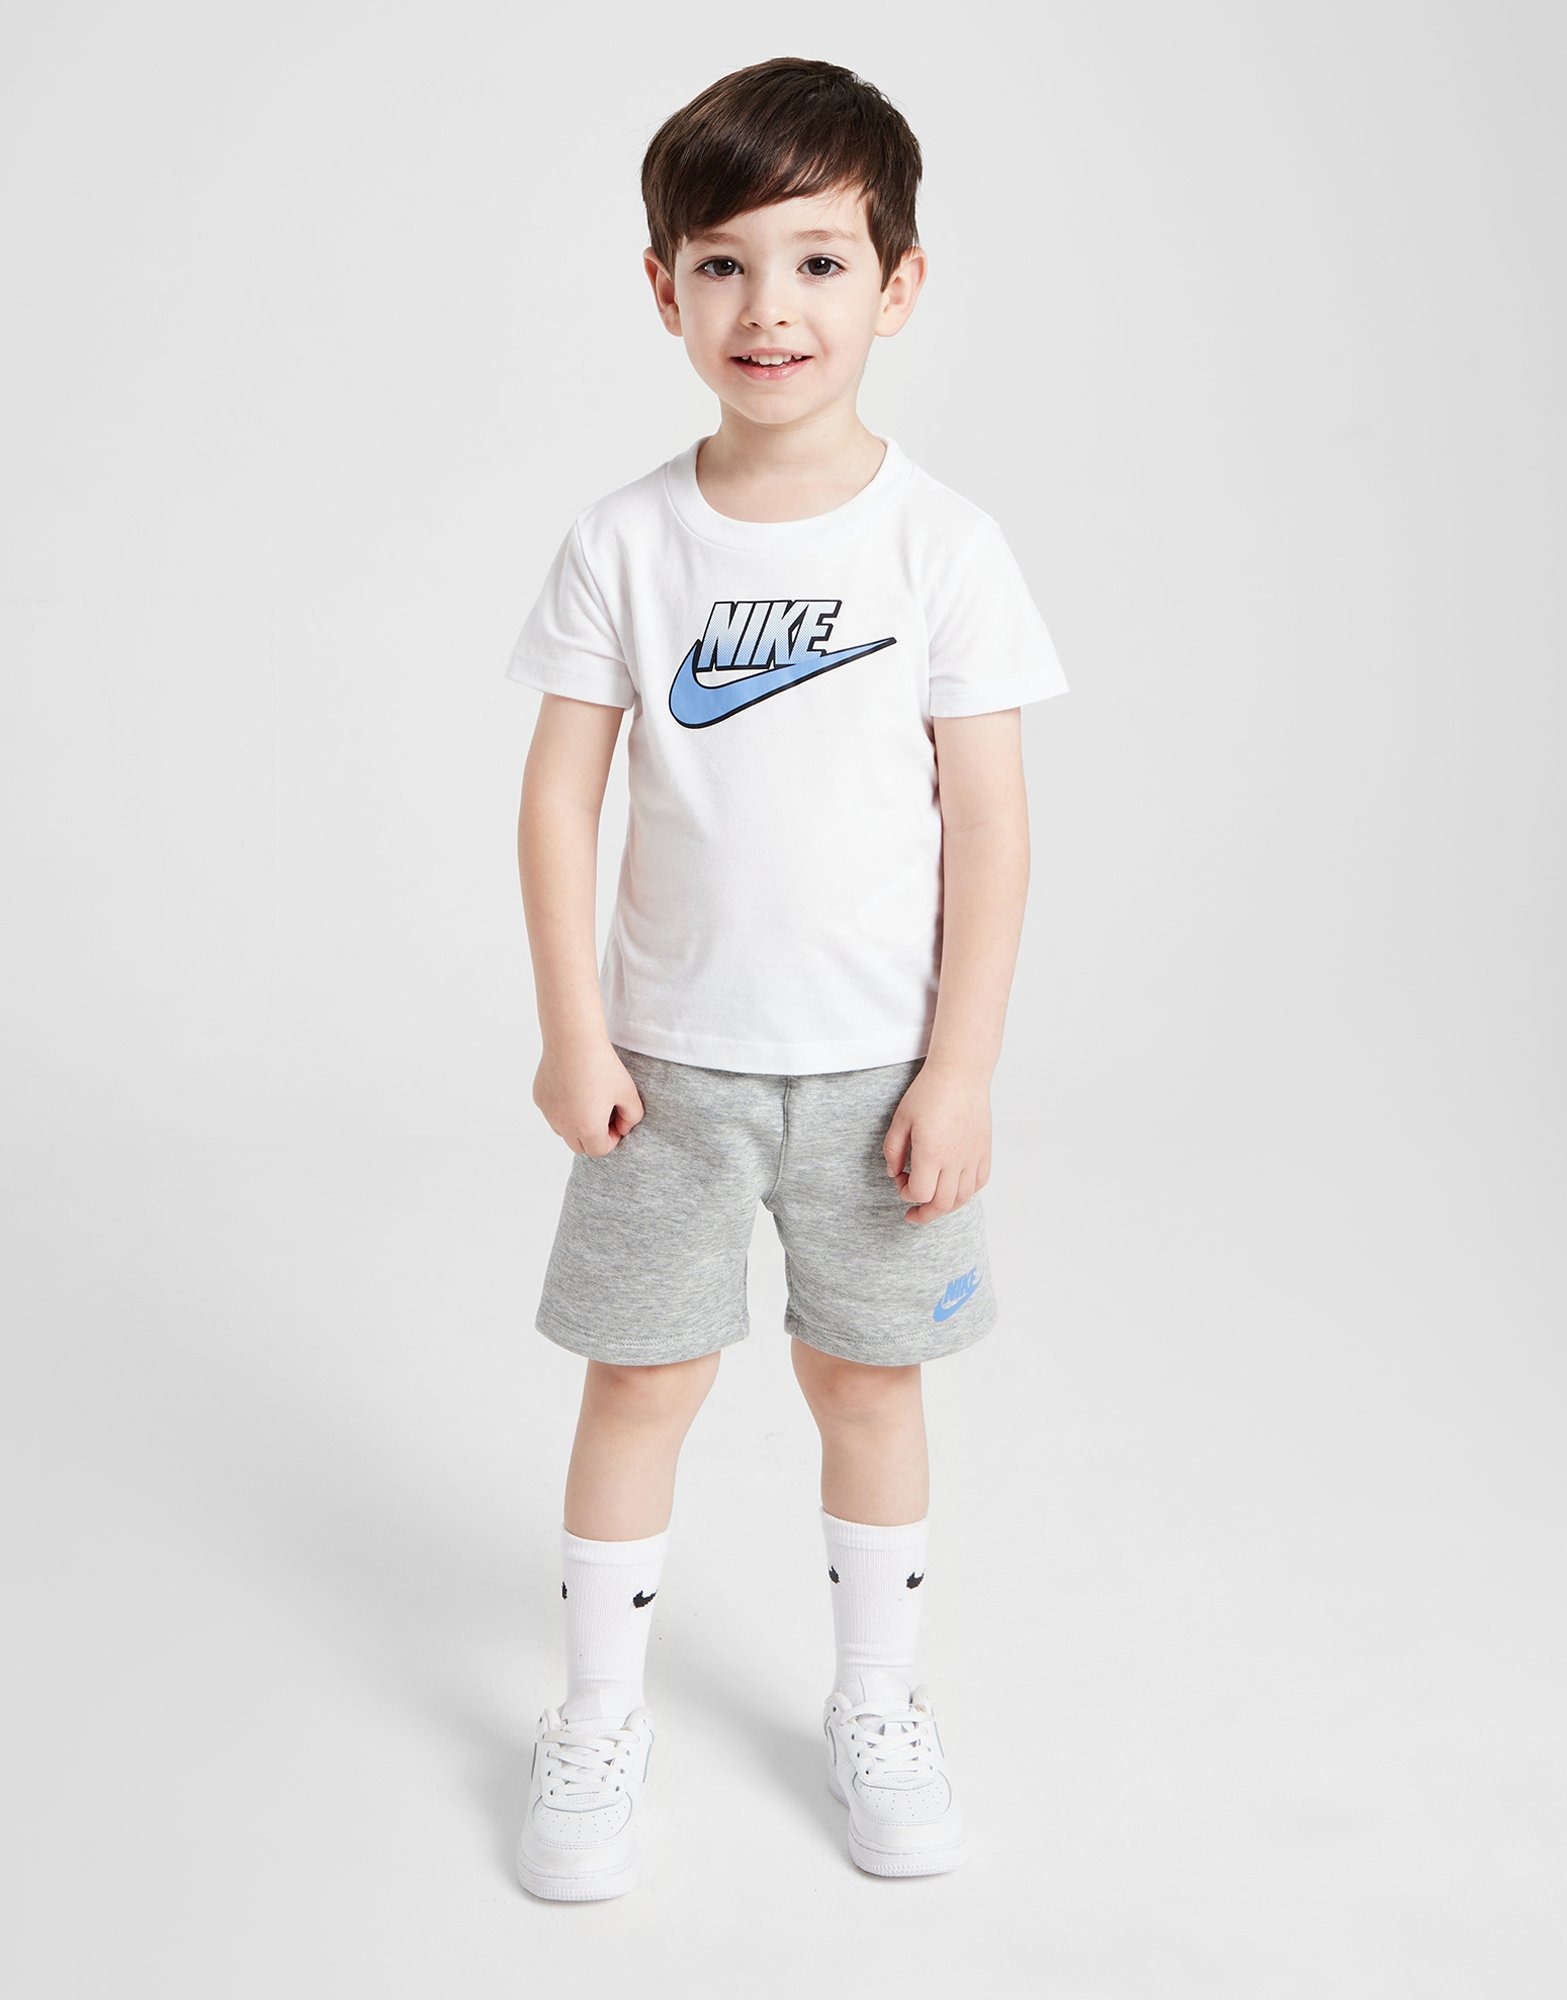 White Nike Fade Logo T-Shirt/Shorts Set Infant | JD Sports UK